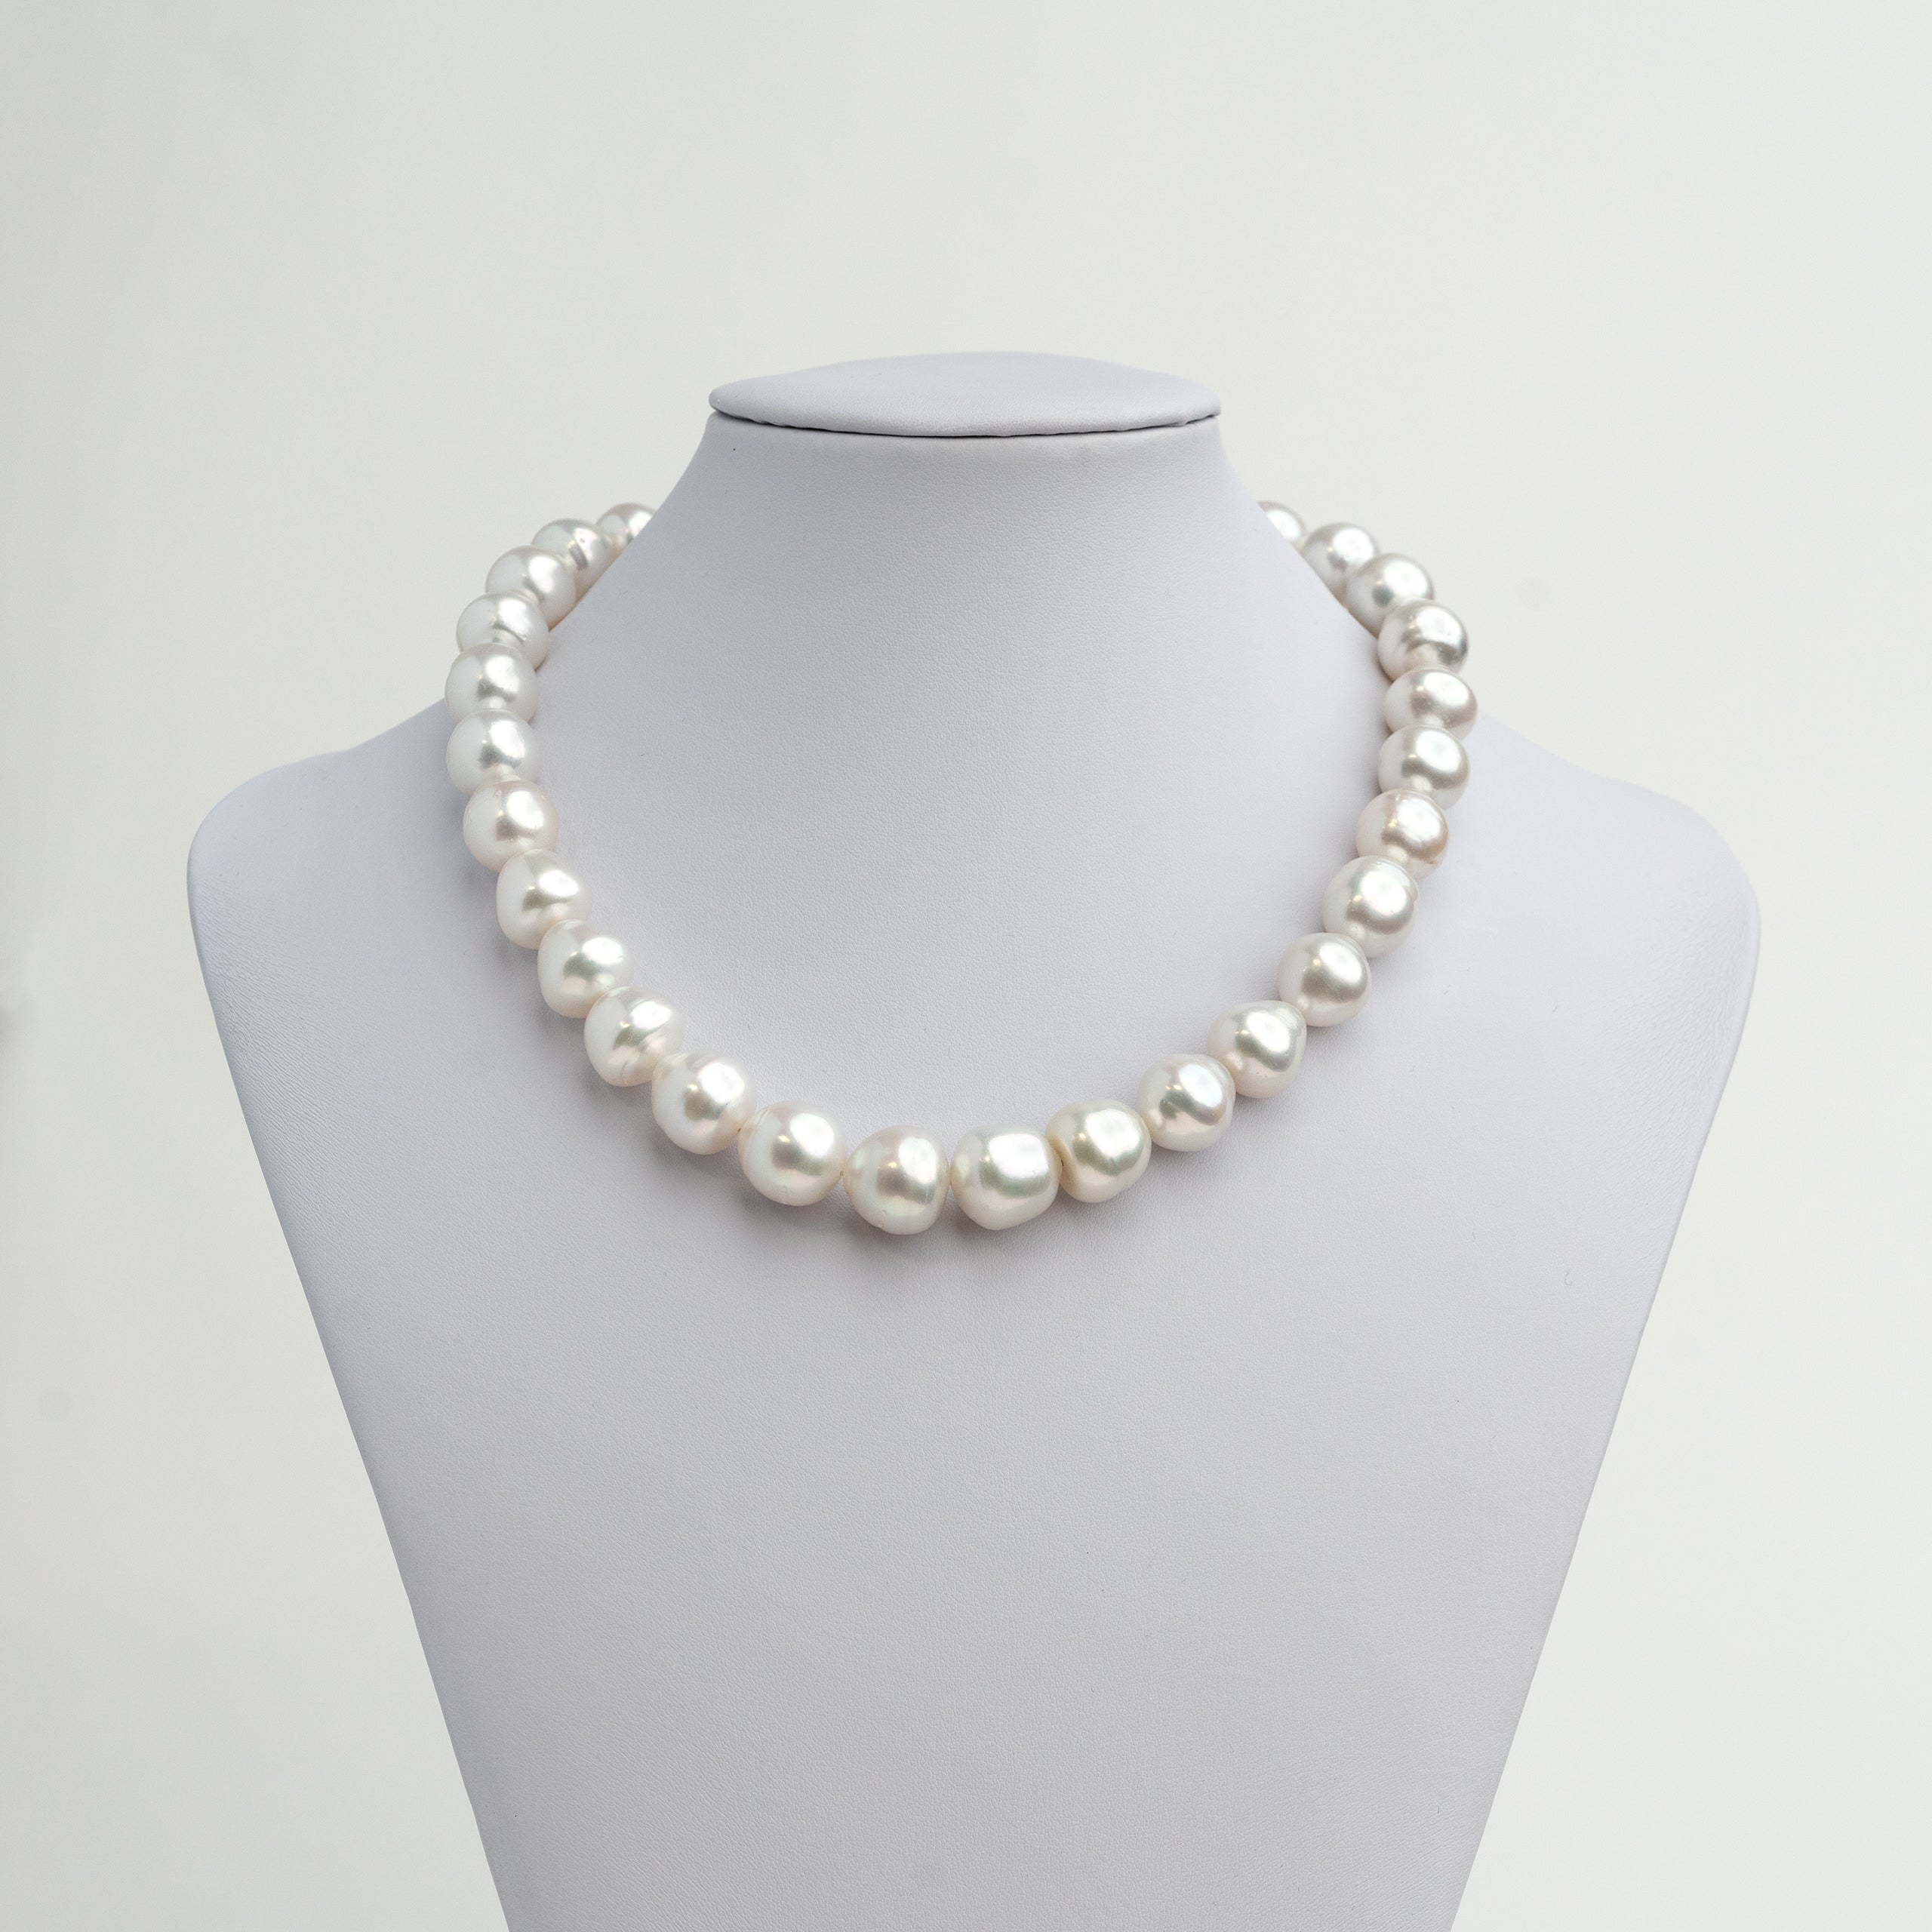 Collar de perlas australianas cultivadas naturales del mar del sur barrocas